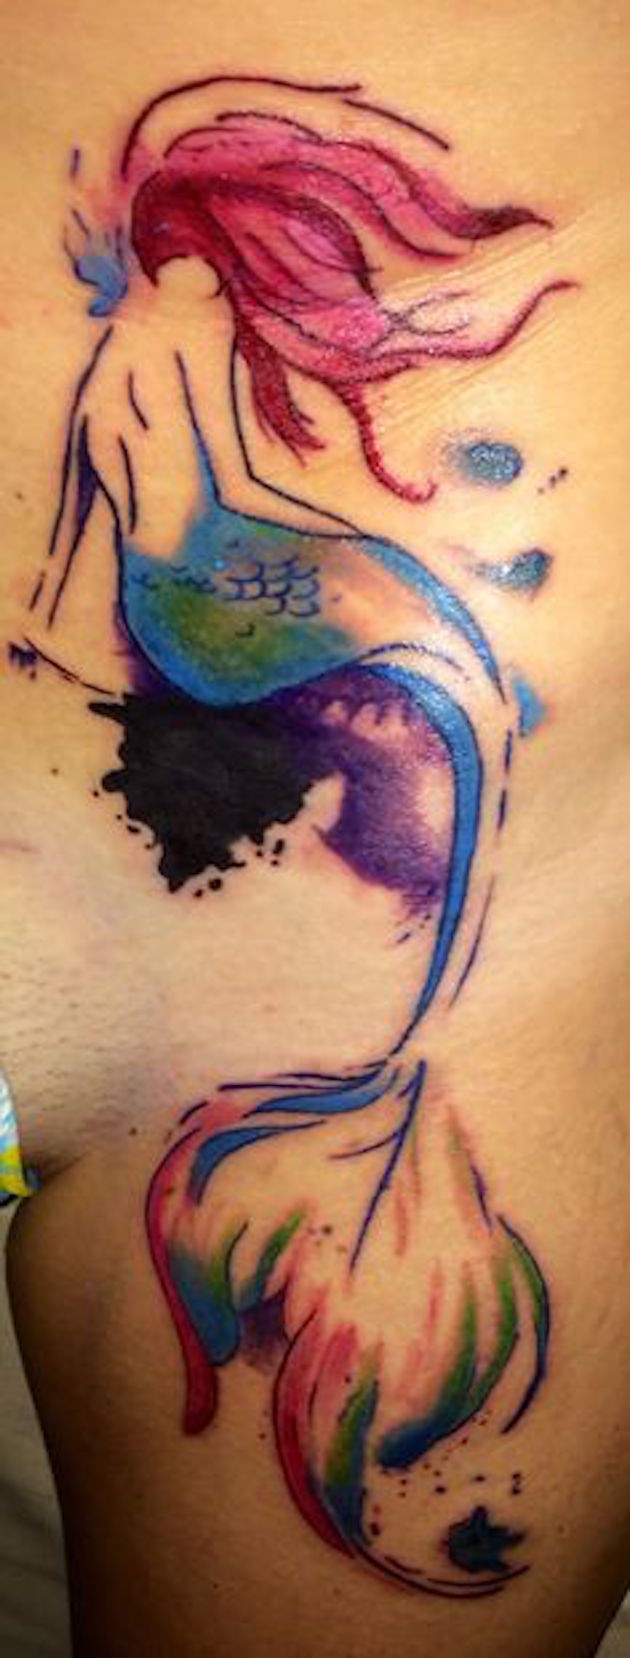 Einfaches hausgemachtes nachlässig gemaltes Bein Tattoo mit einsamer Meerjungfrau